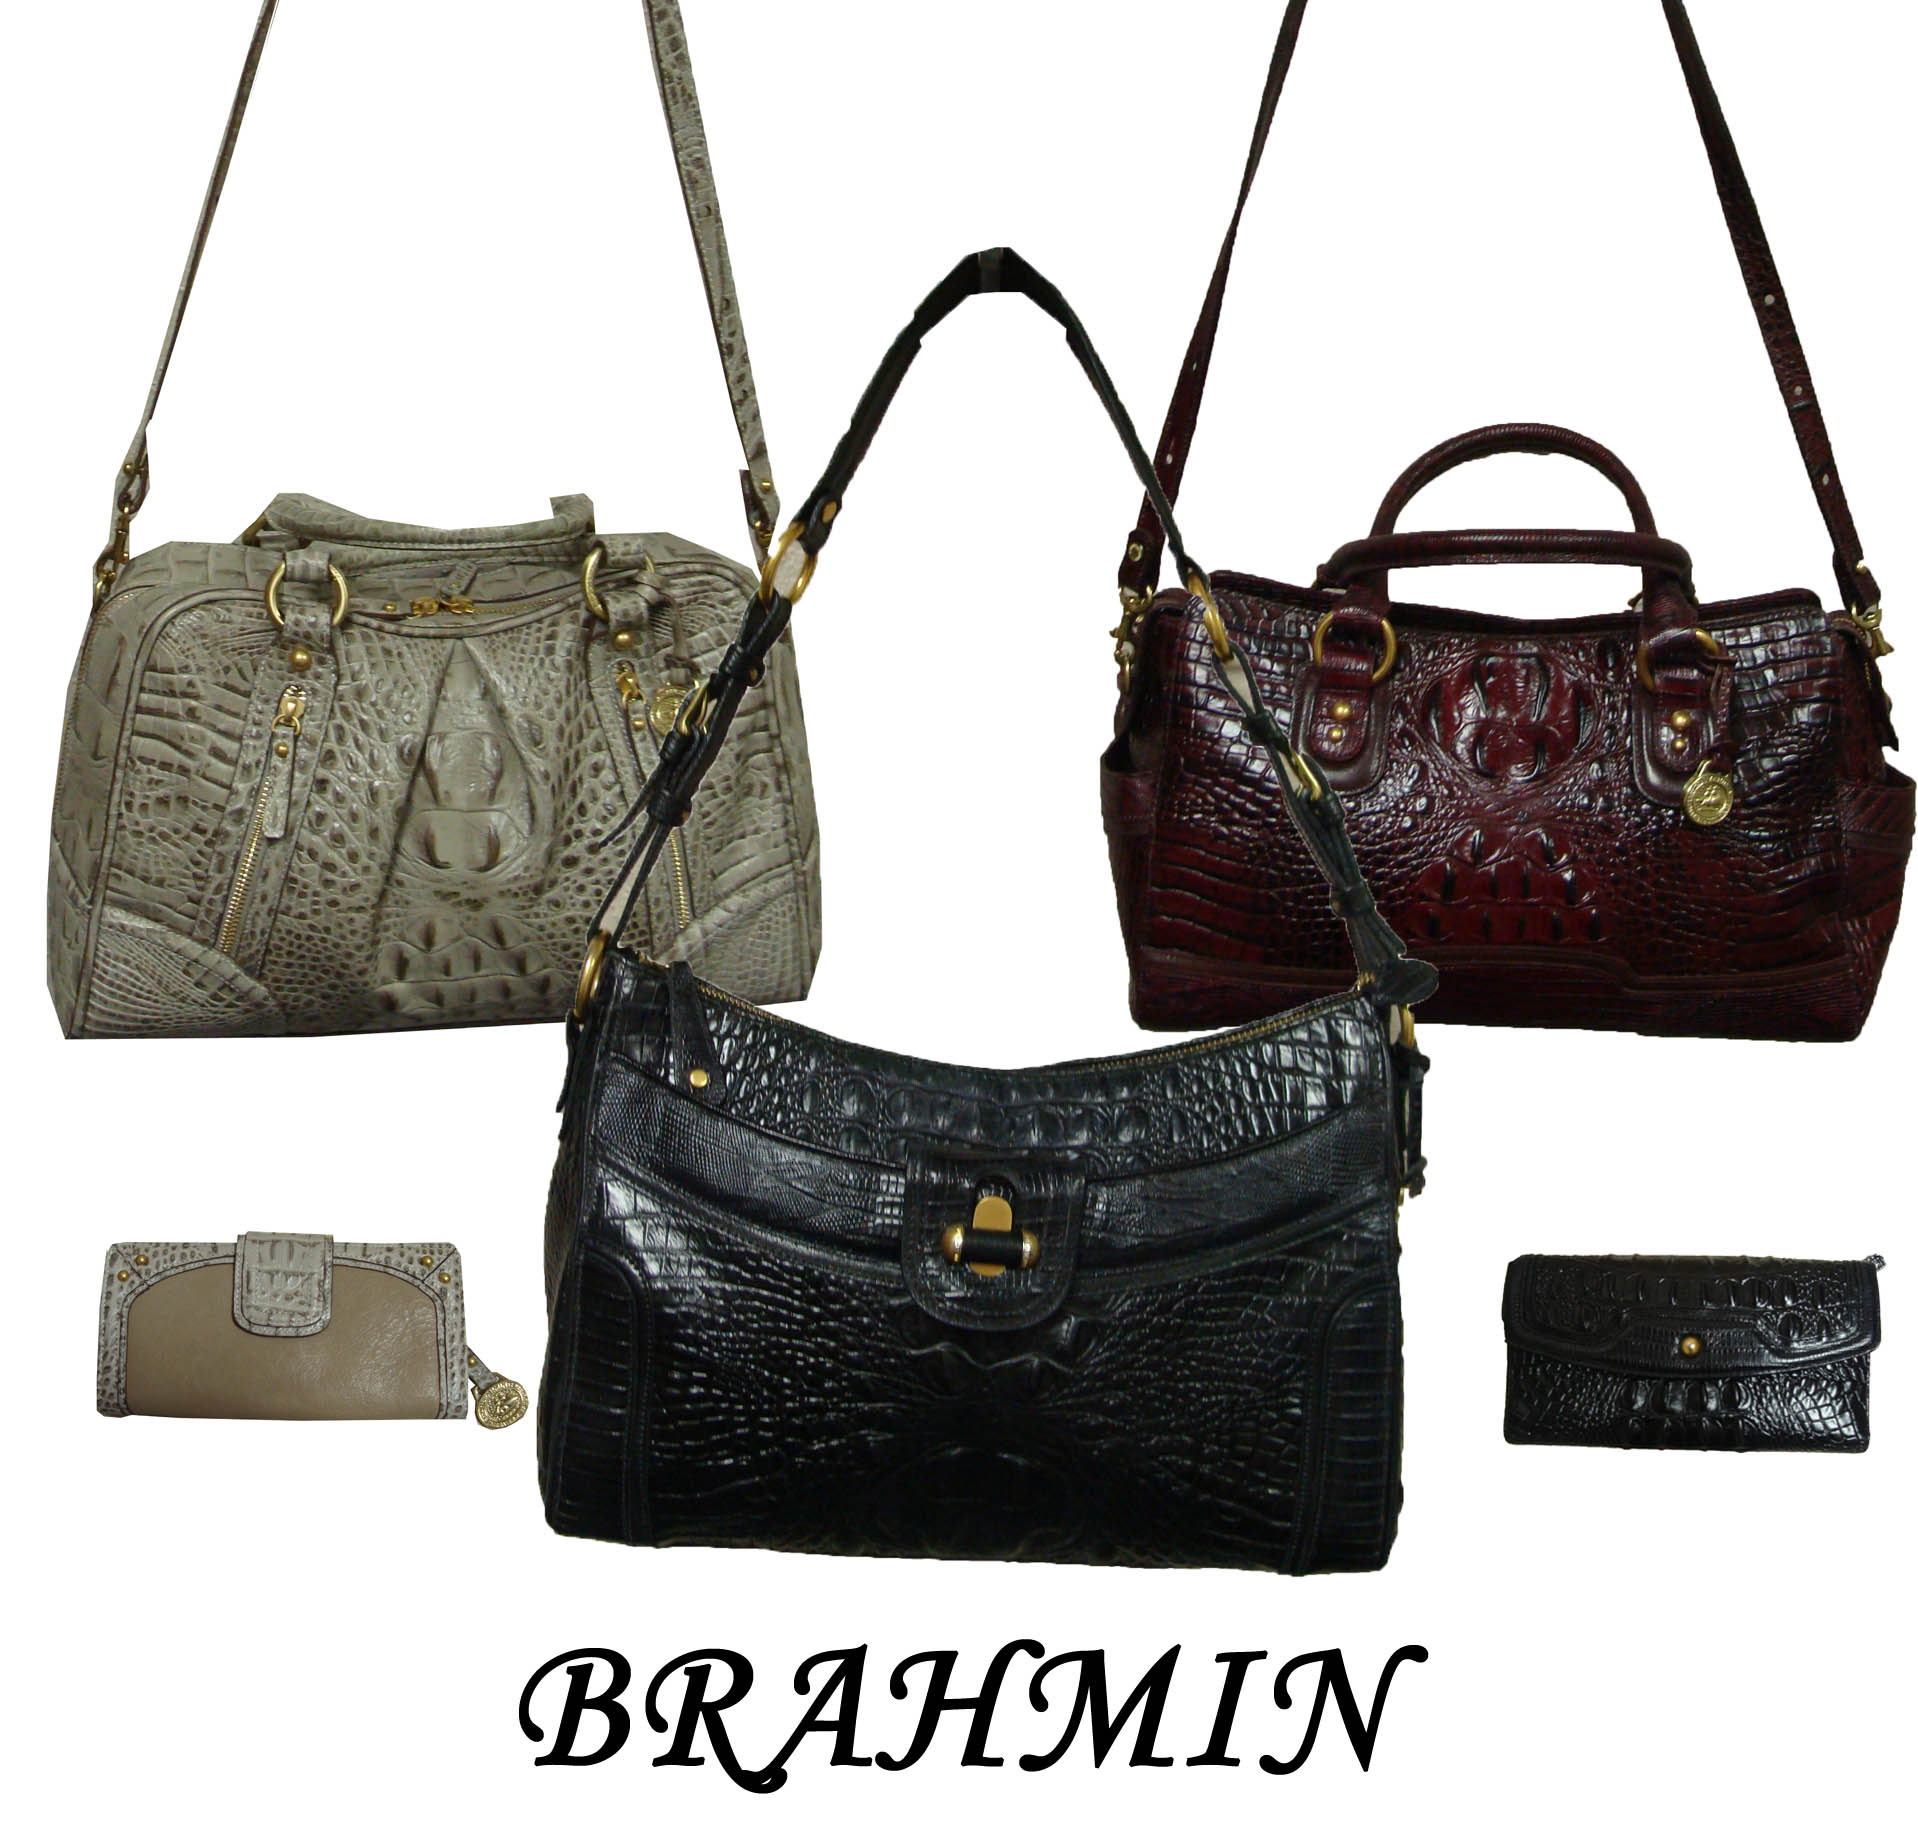 Brahmin, Bags